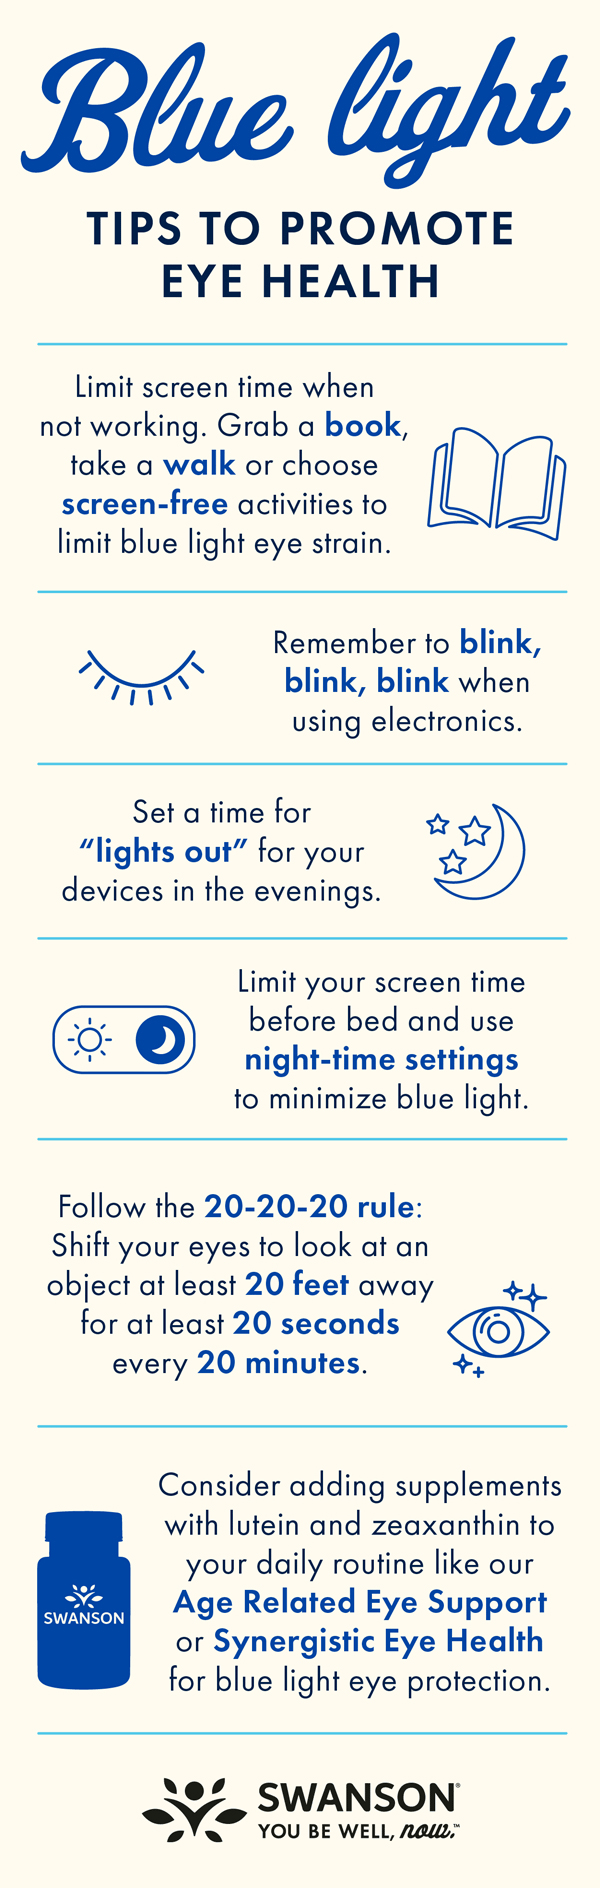 Blue Light Tips for Healthy Eyesight